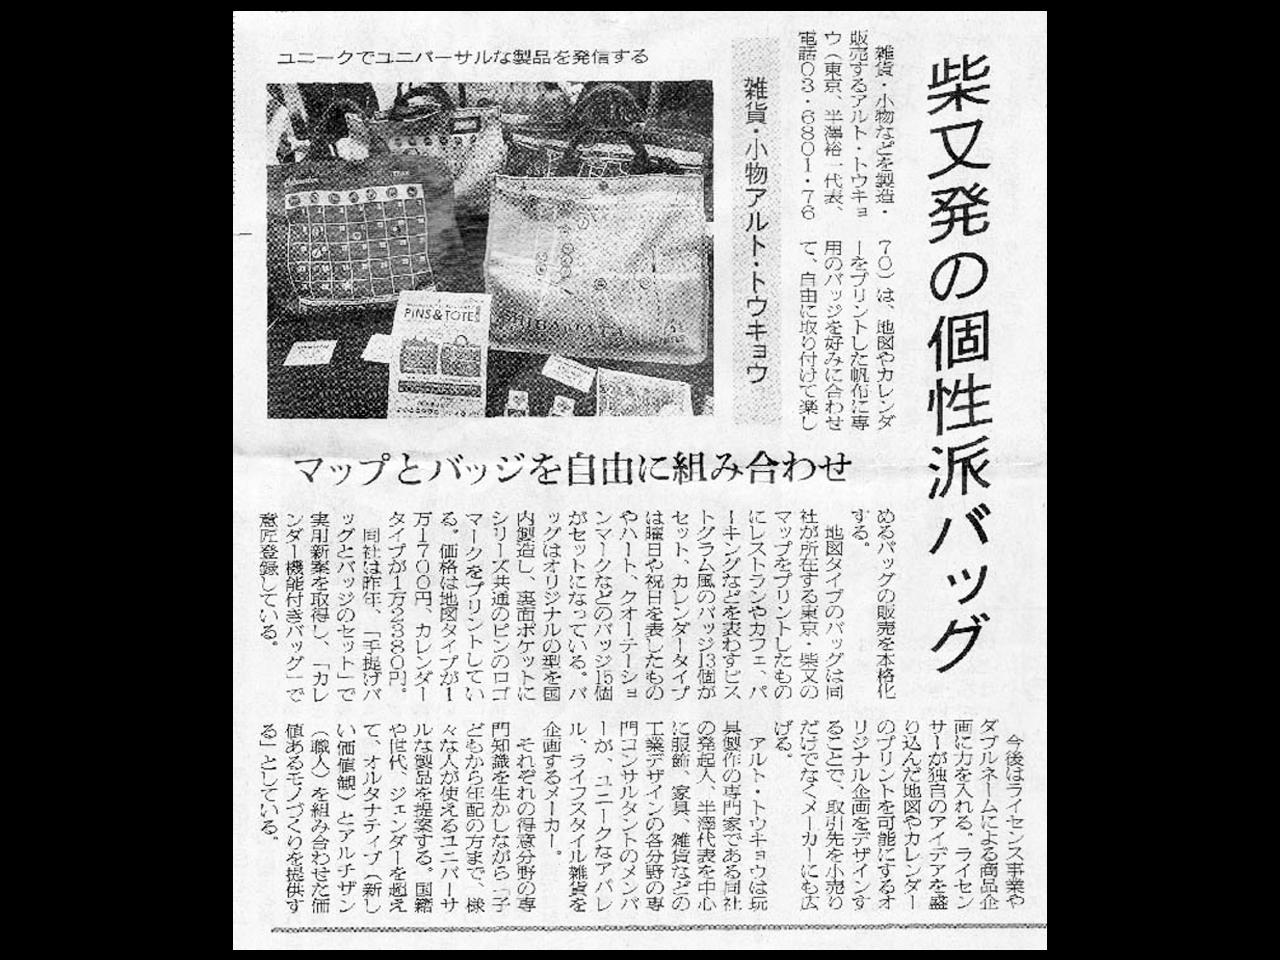 http://alrt.tokyo/news/senken2016_05.jpg